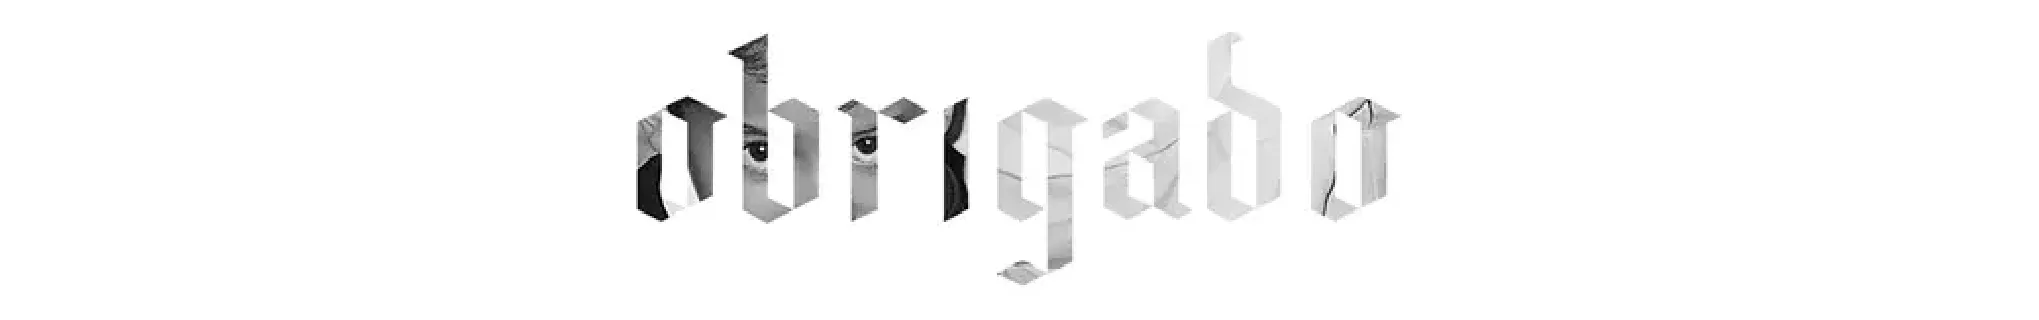 Santiago Typeface font